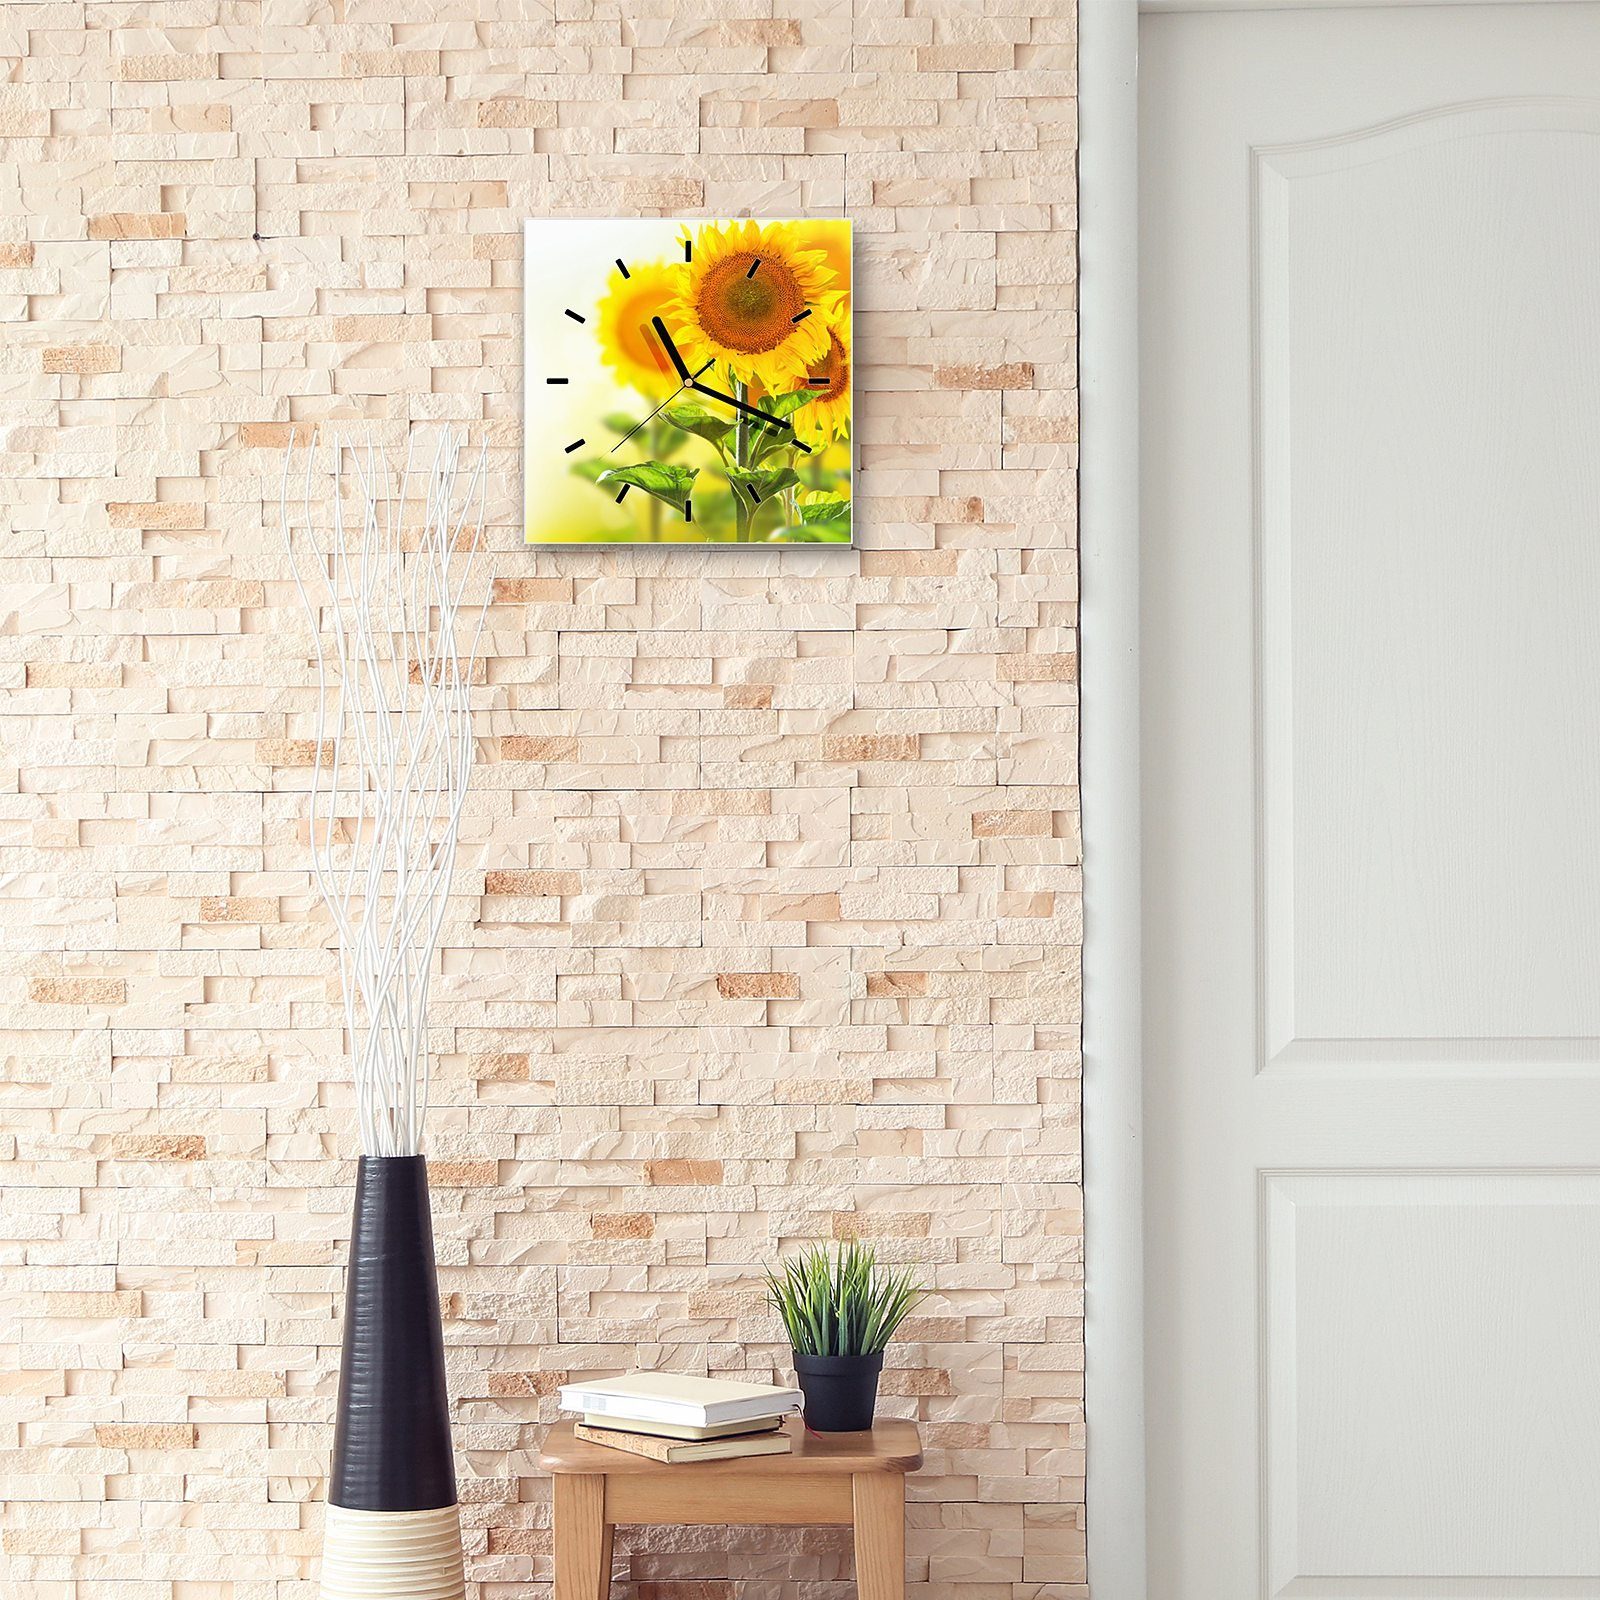 mit Wanduhr cm Primedeco Wandkunst Glasuhr Sonnenblumenzweige Wanduhr Motiv Größe 30 30 x